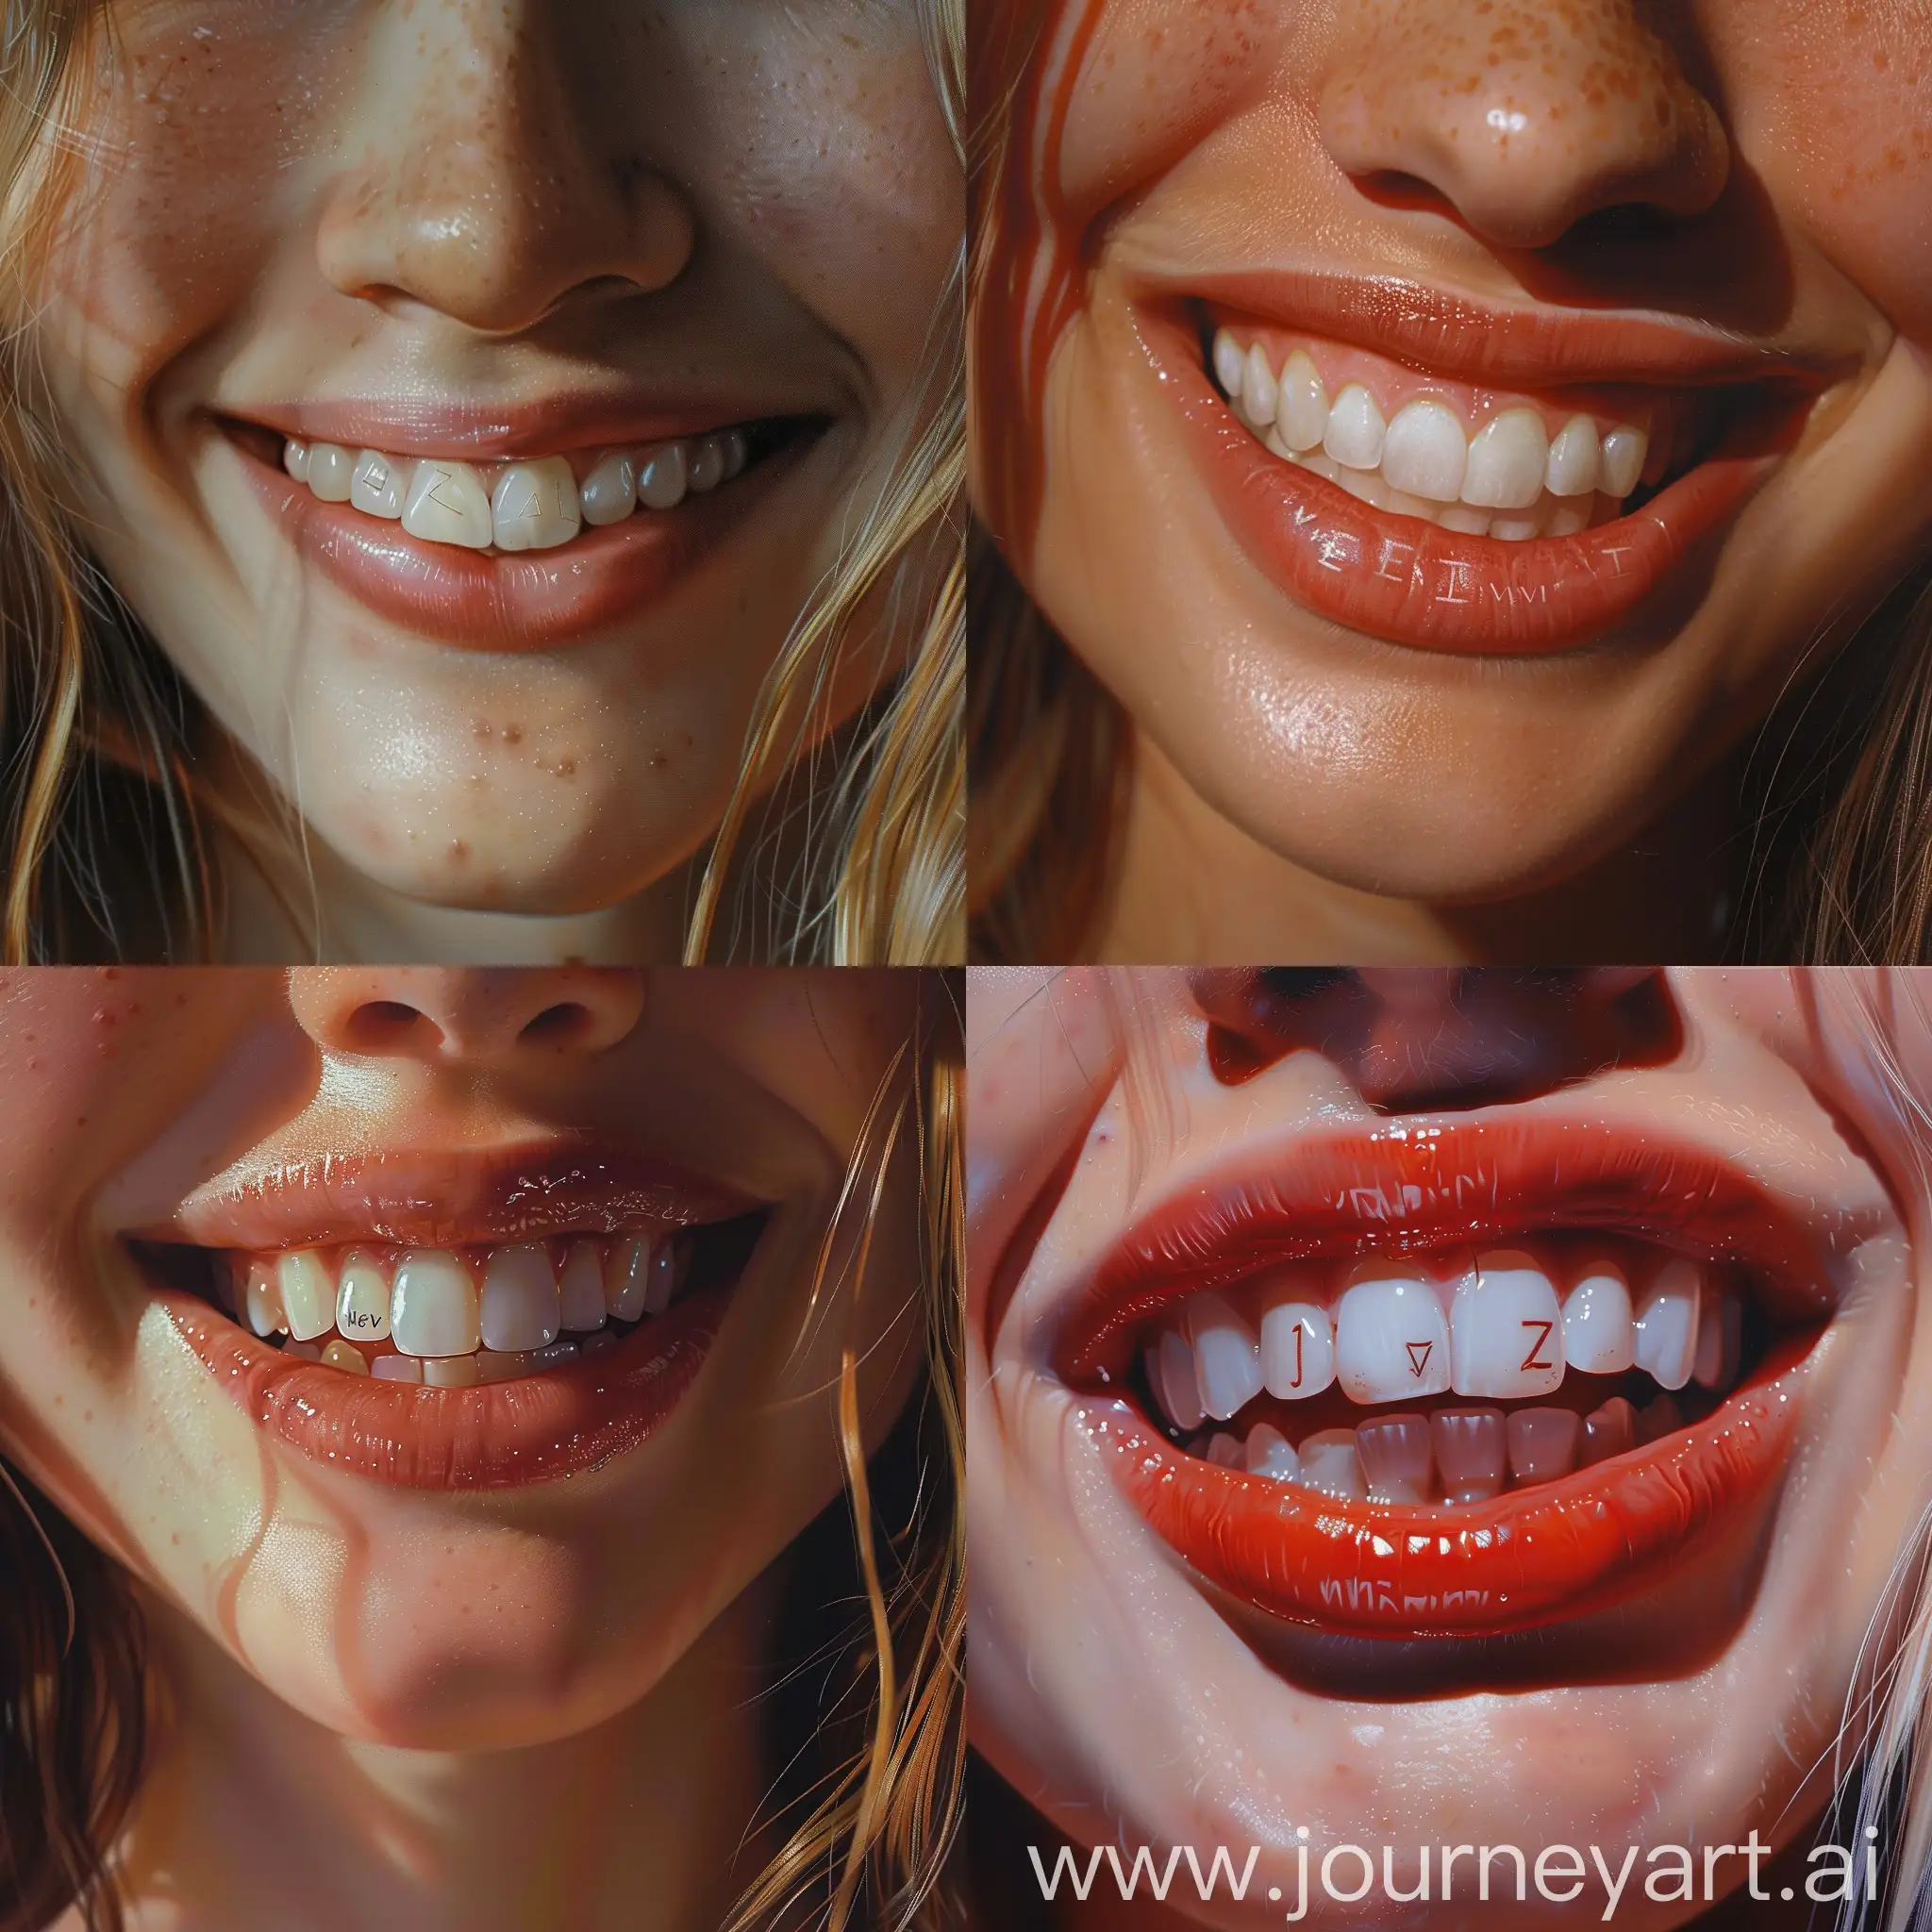 Девушка улыбается, на верхних зубах написано "NevZ", на нижних зубах написано "AI". Фото крупным планом. Фотореализм